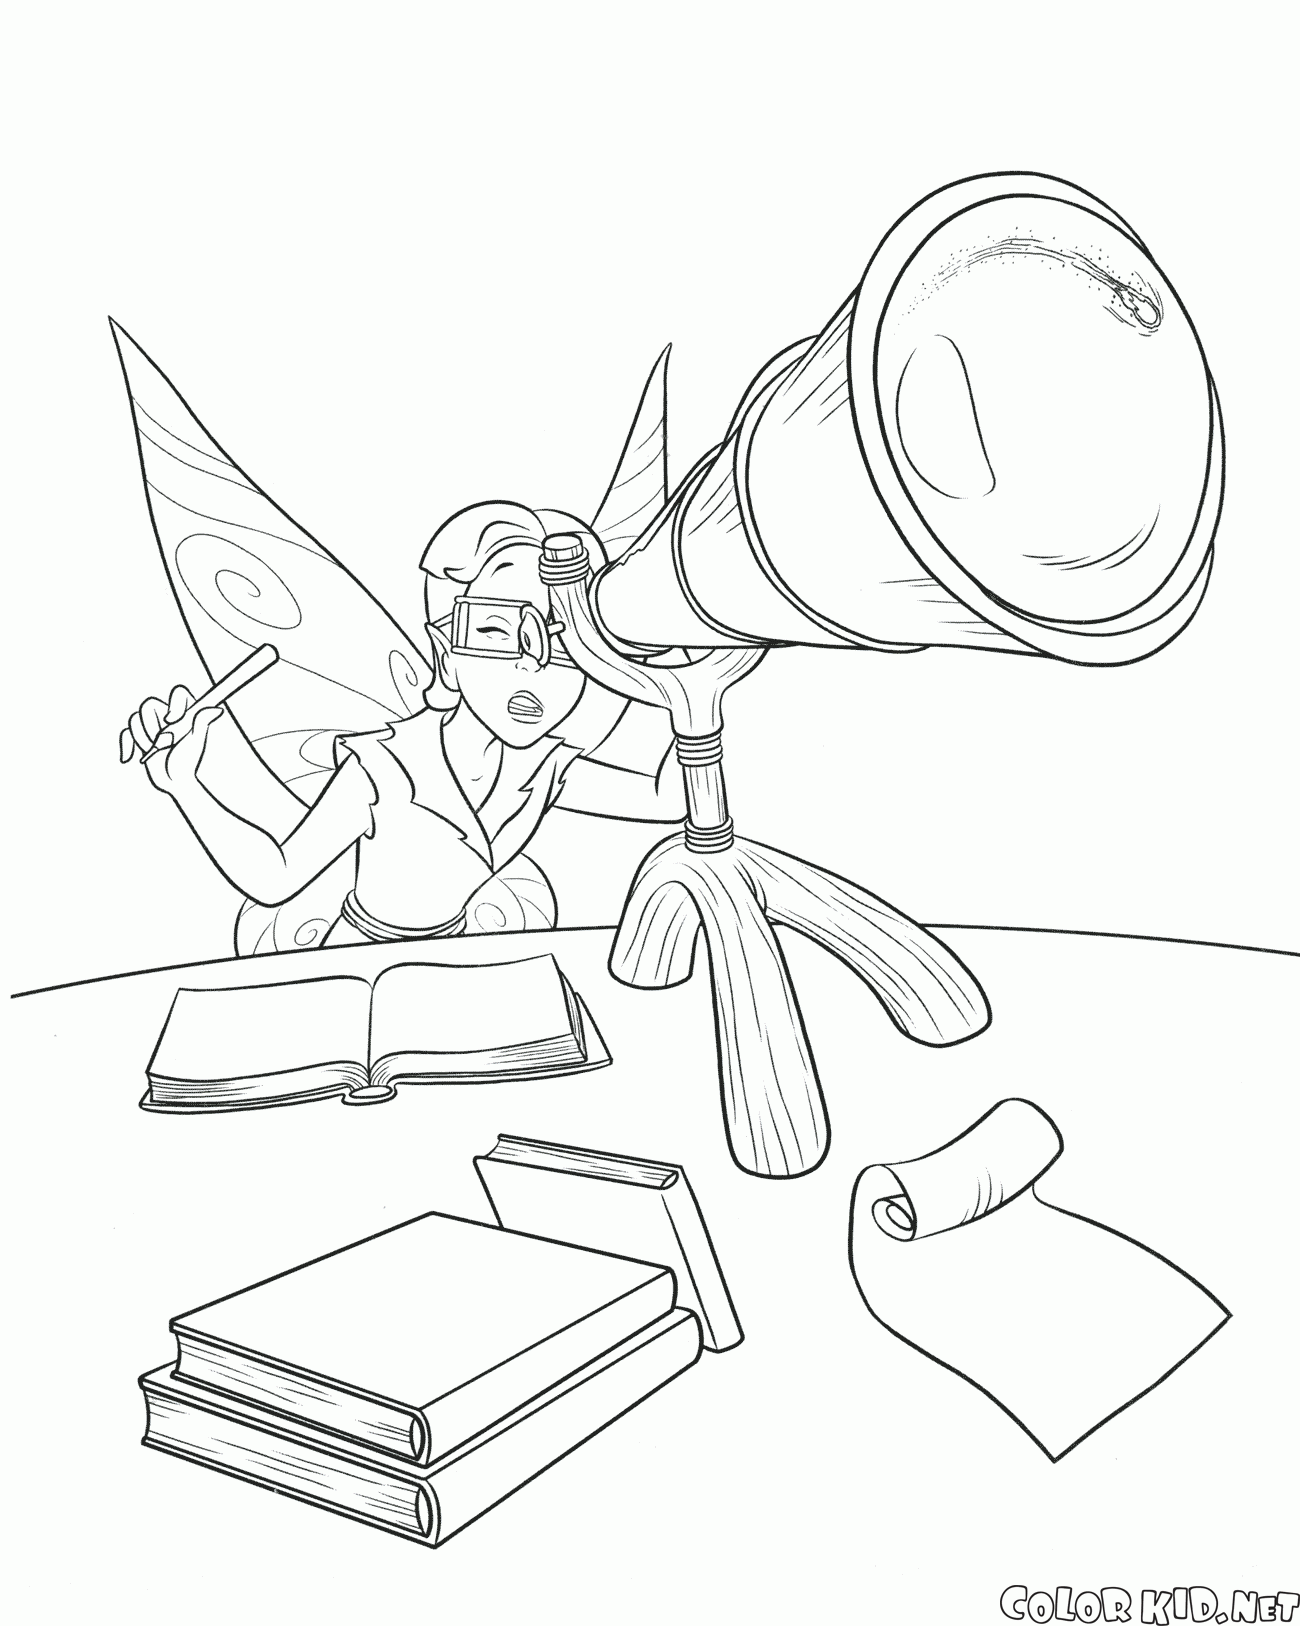 Scribble y su telescopio